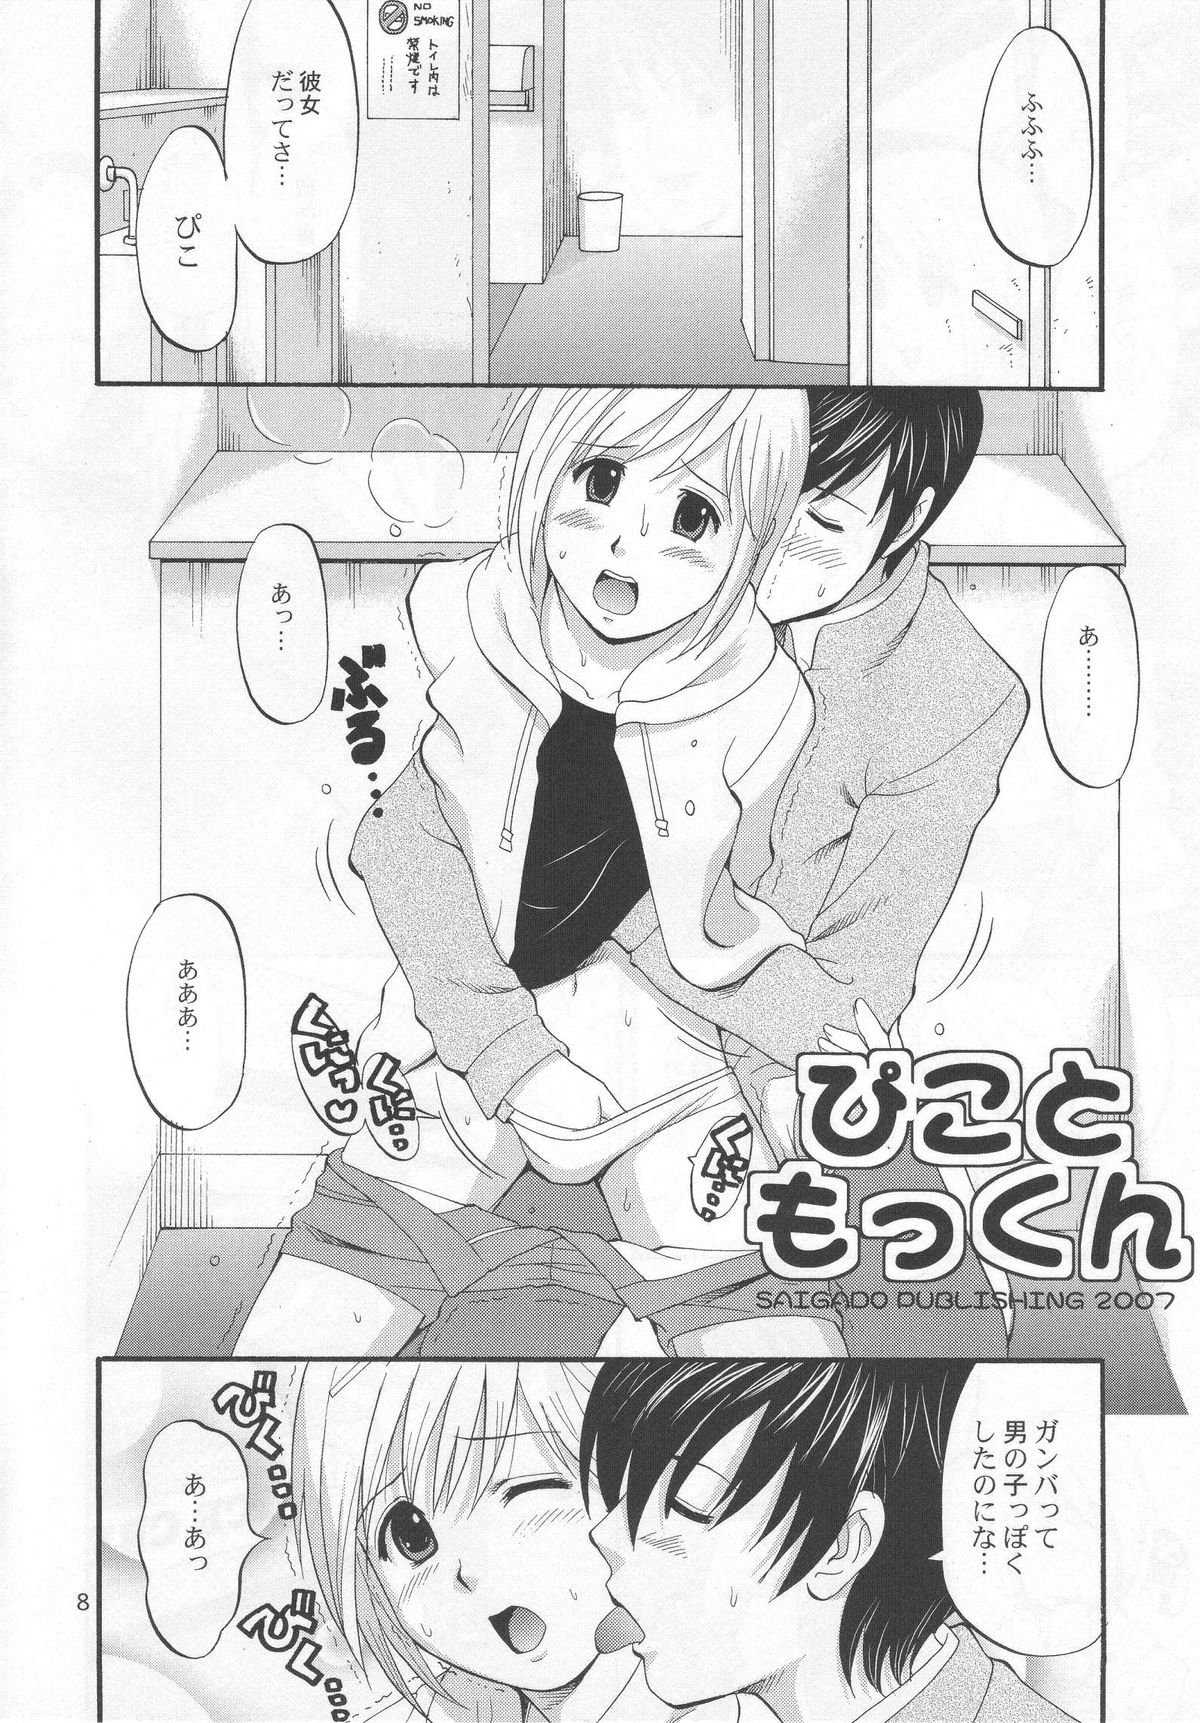 (COMIC1) [Saigado] Boku no Pico Comic + Koushiki Character Genanshuu (Boku no Pico) page 6 full